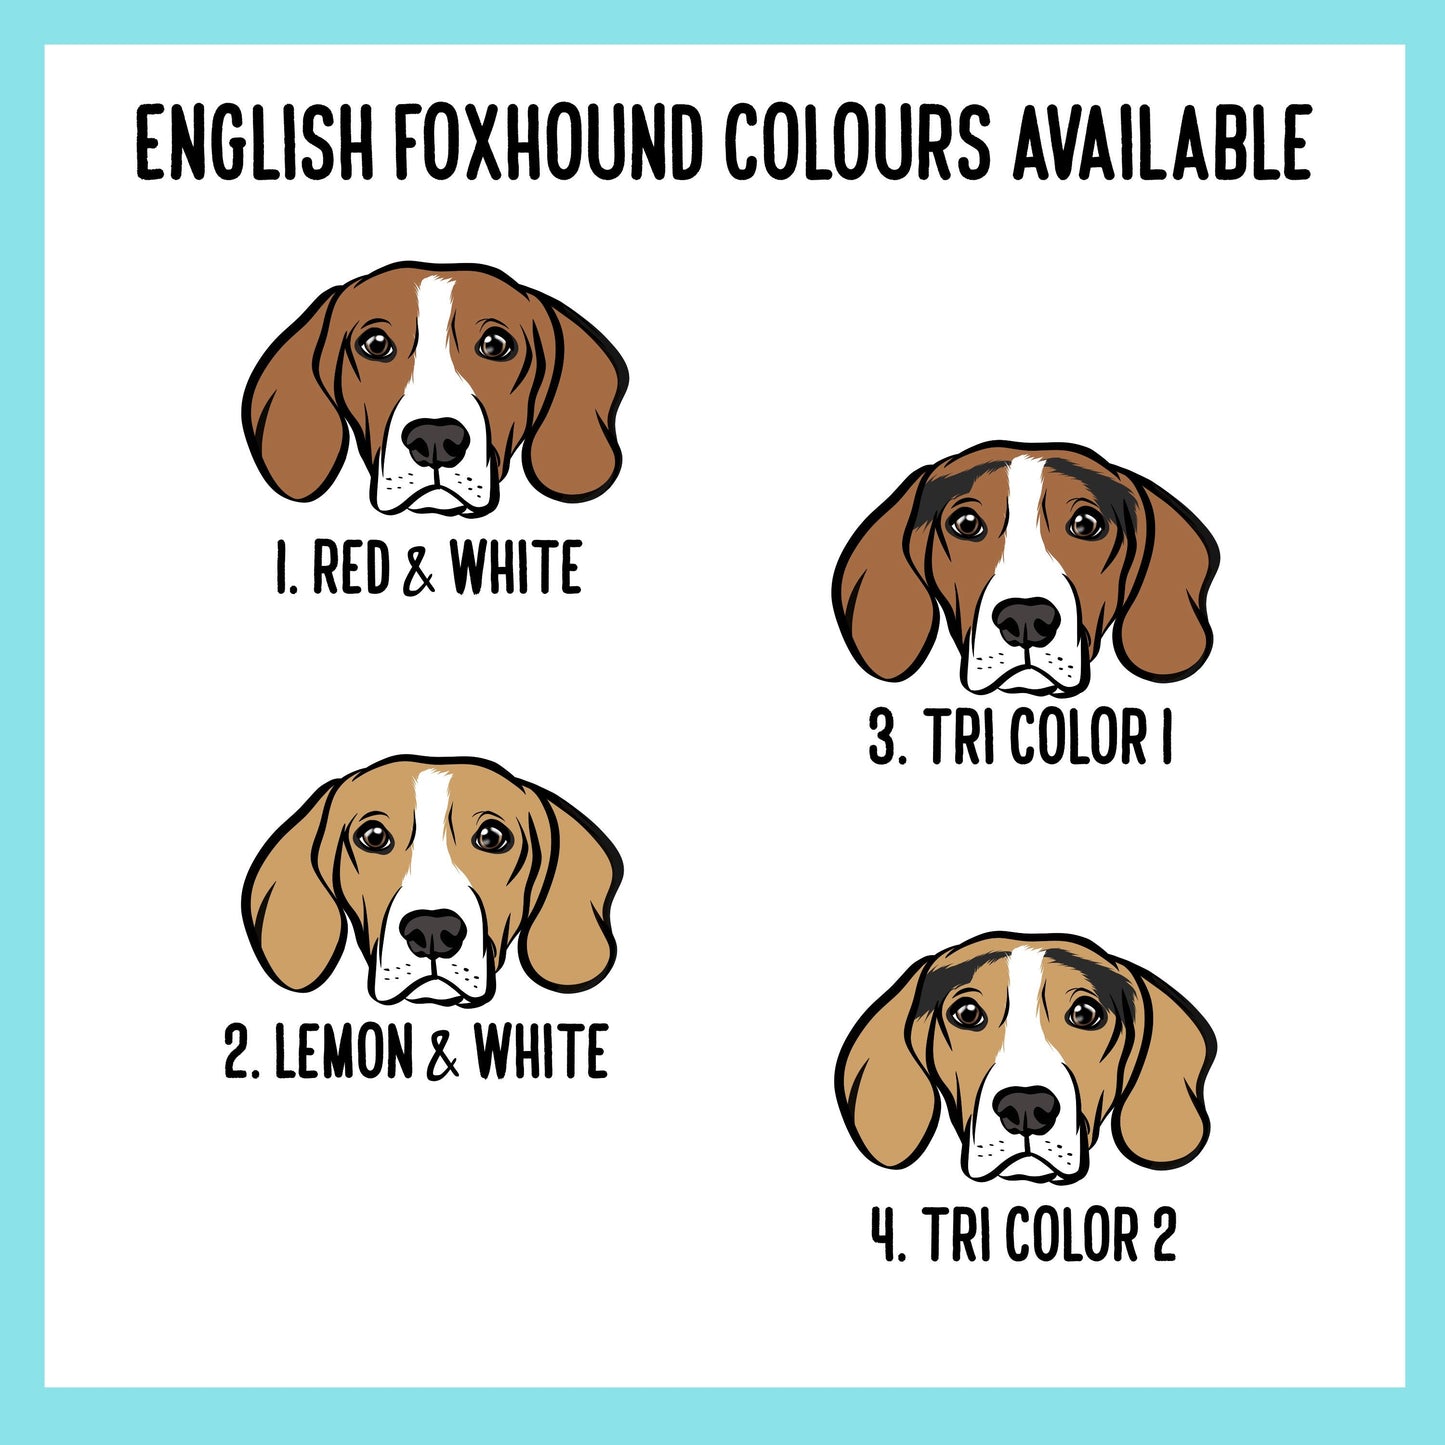 English Foxhound Baby Onesie